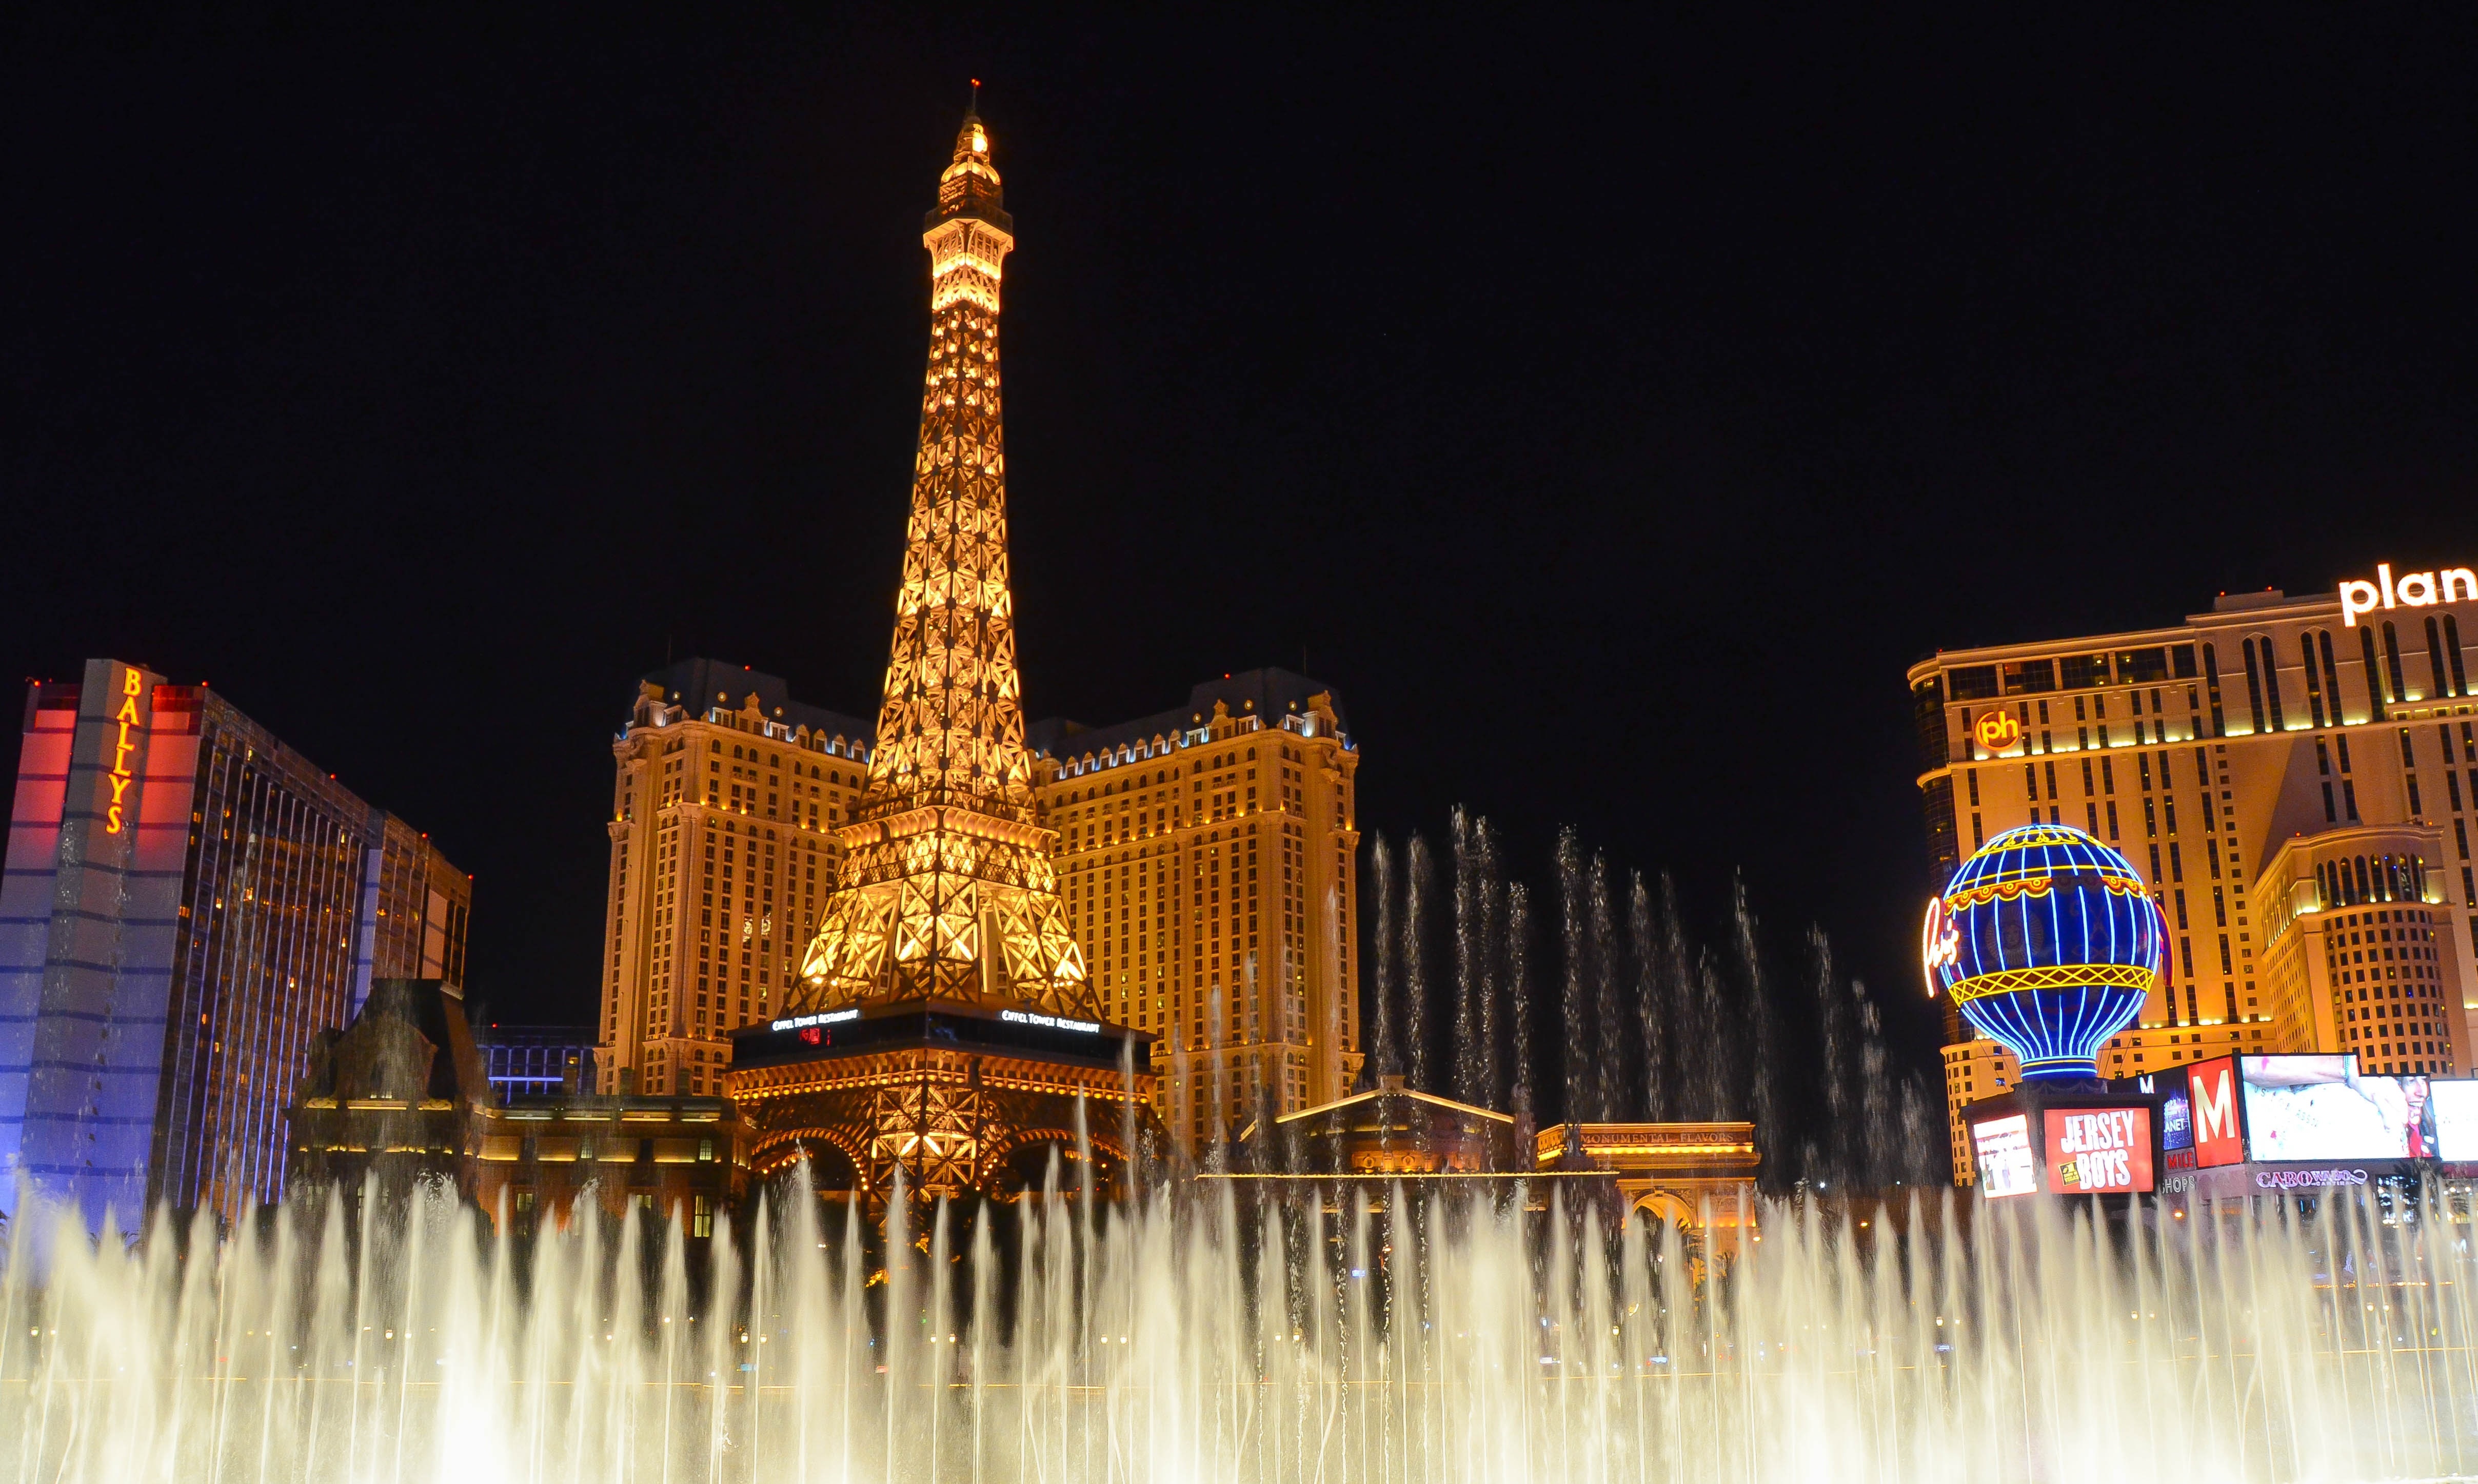 Las Vegas, Fountains, Paris, night, illuminated